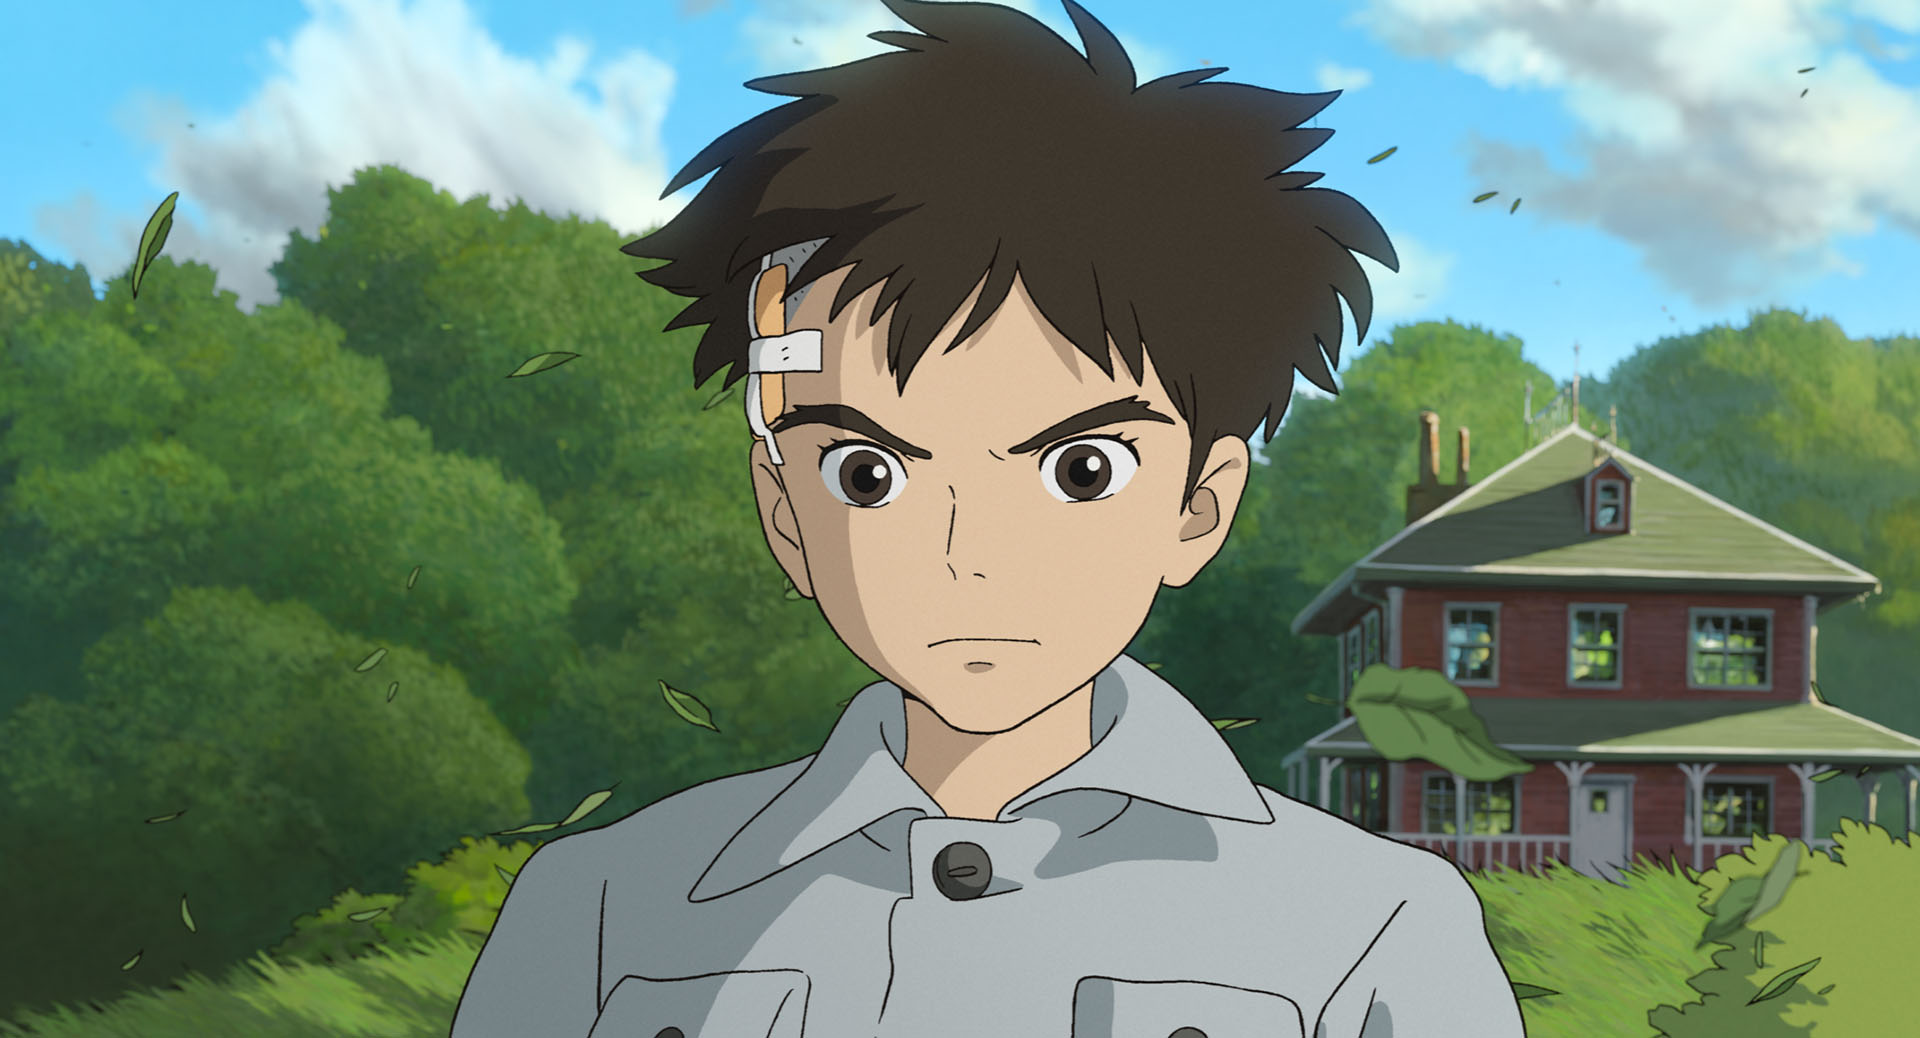 Il trailer italiano de “Il ragazzo e l’airone”, il nuovo film di Hayao Miyazaki, al cinema dal 1 gennaio!